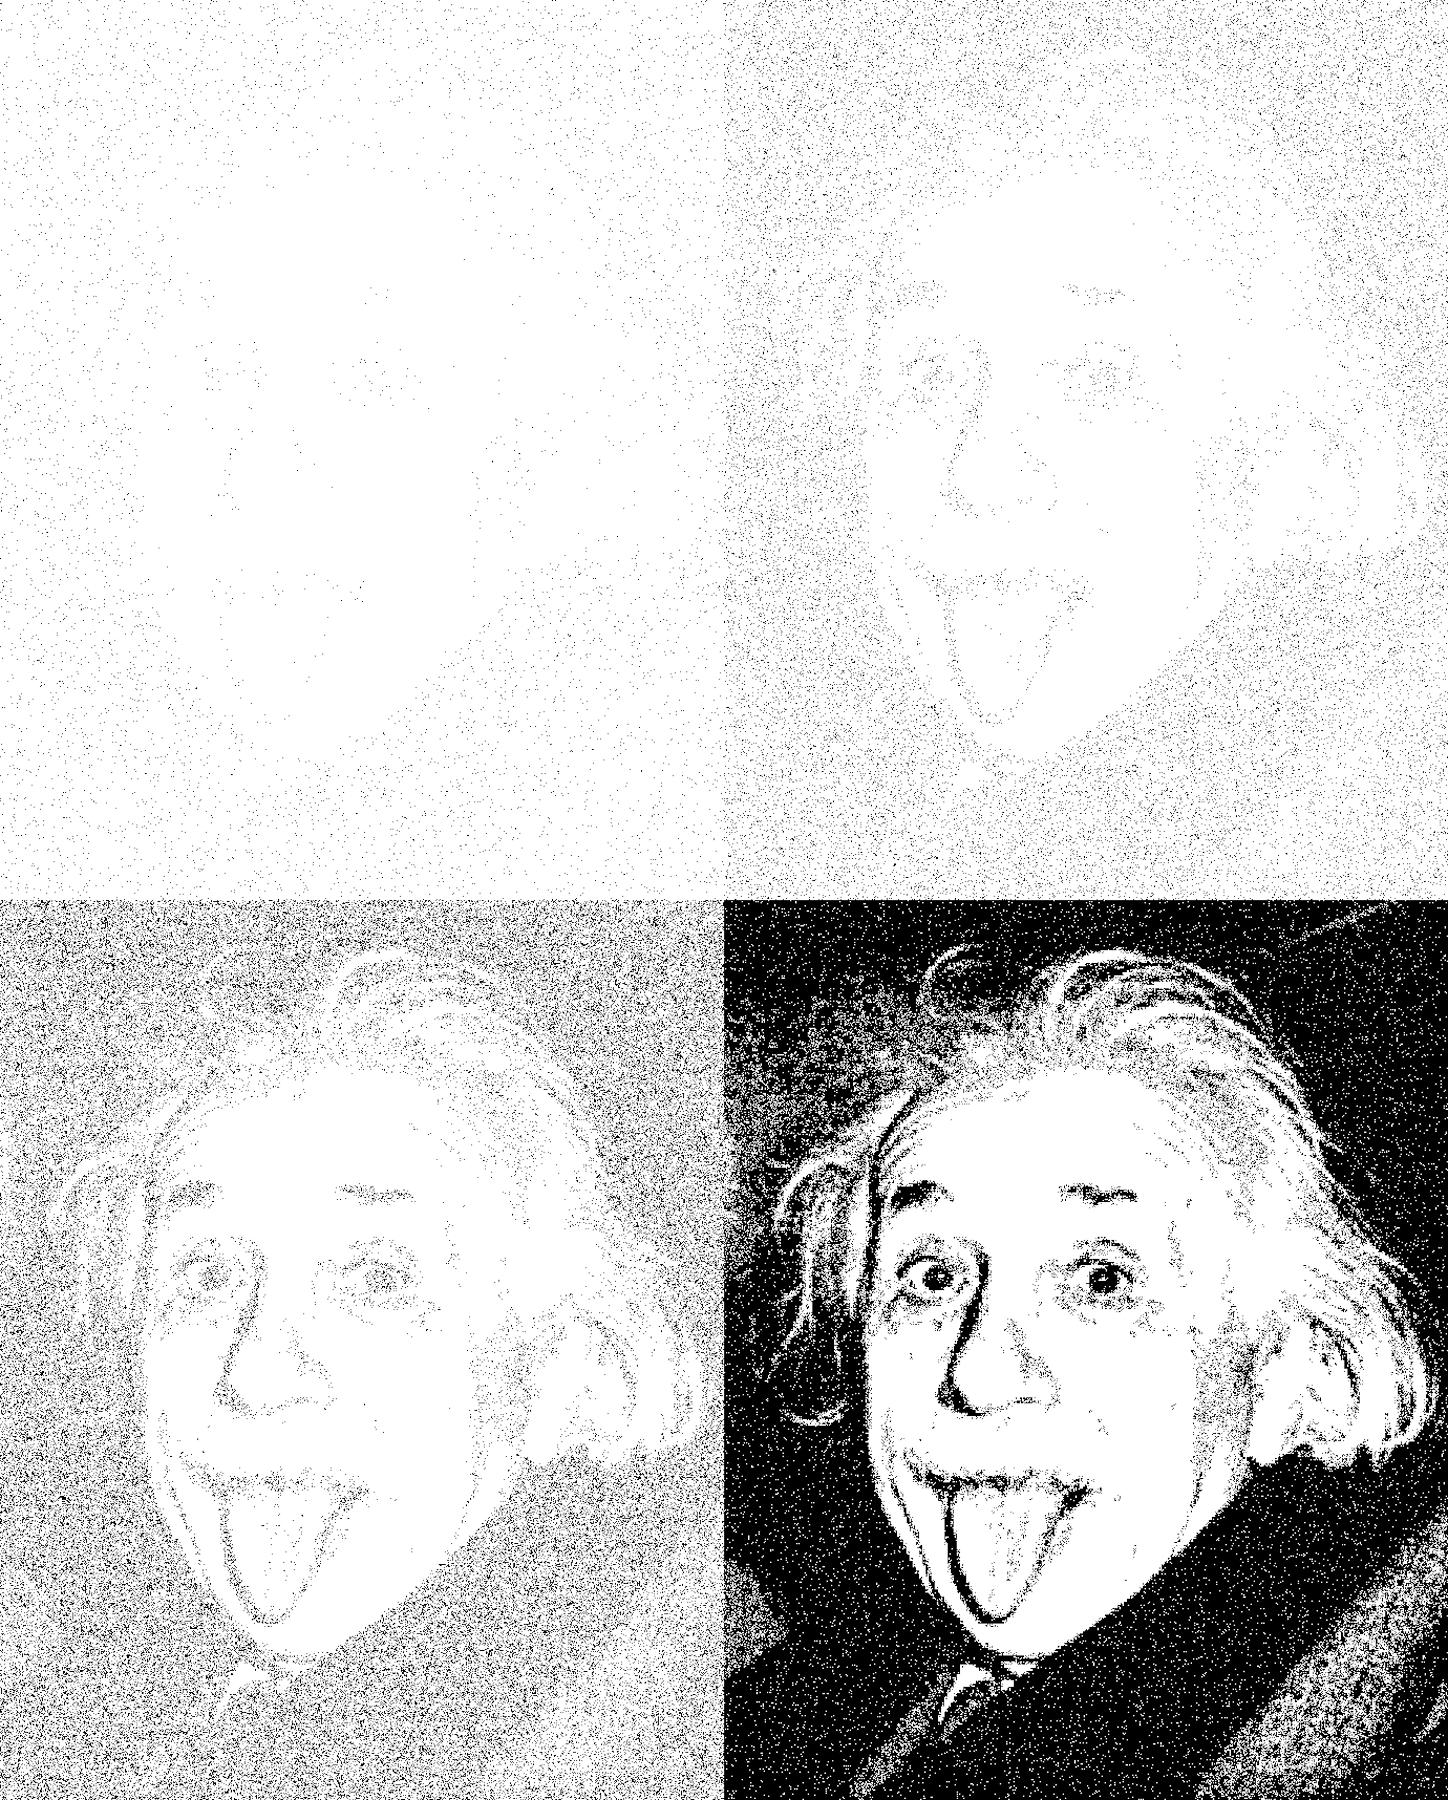 Image for entry 'Schrödinger's Einstein'